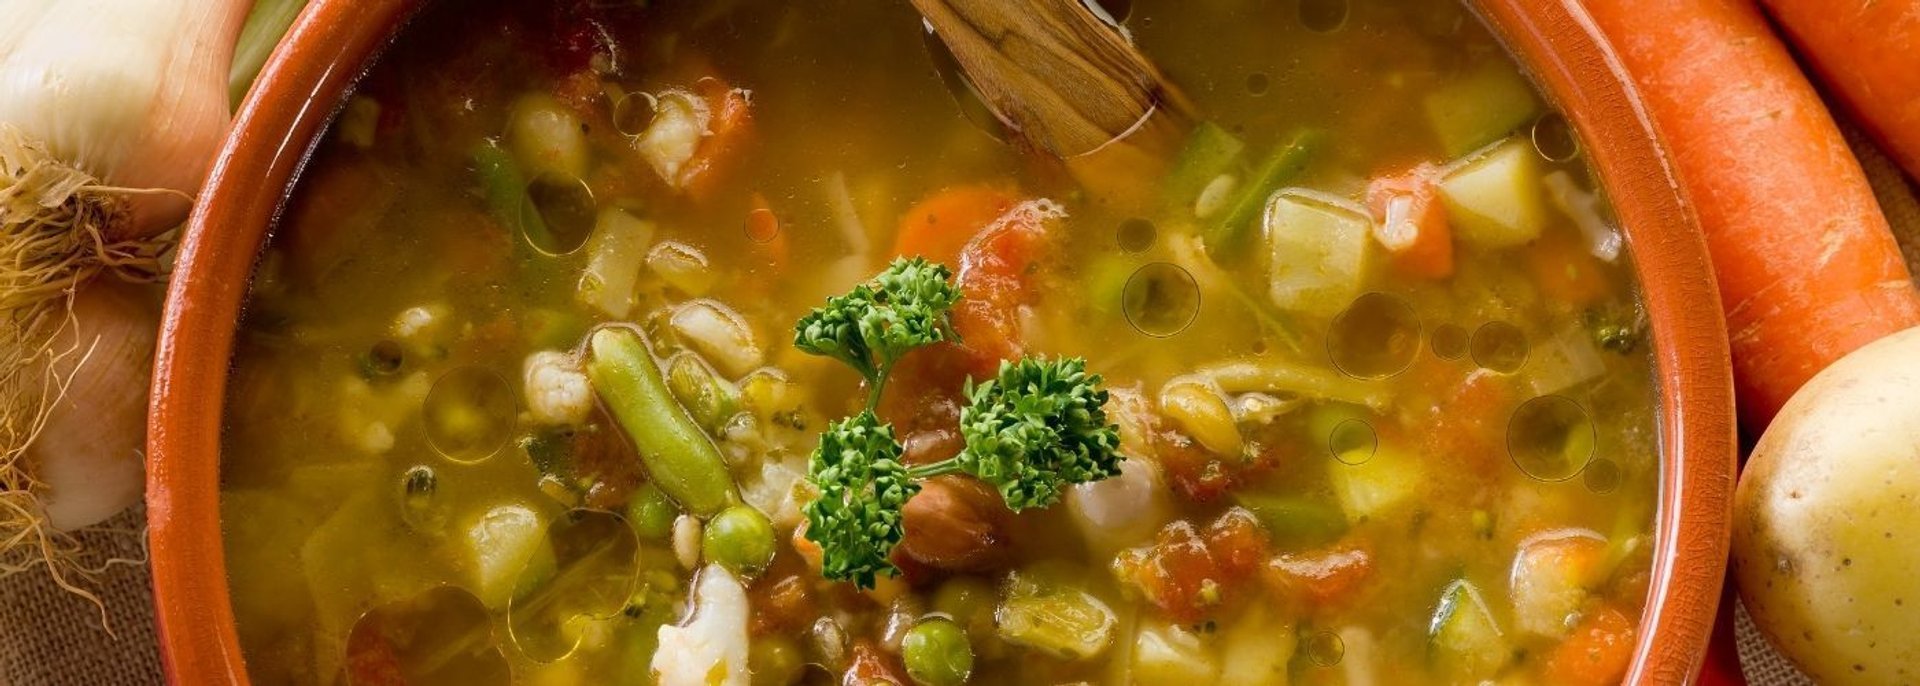 Jak mrozić zupy?